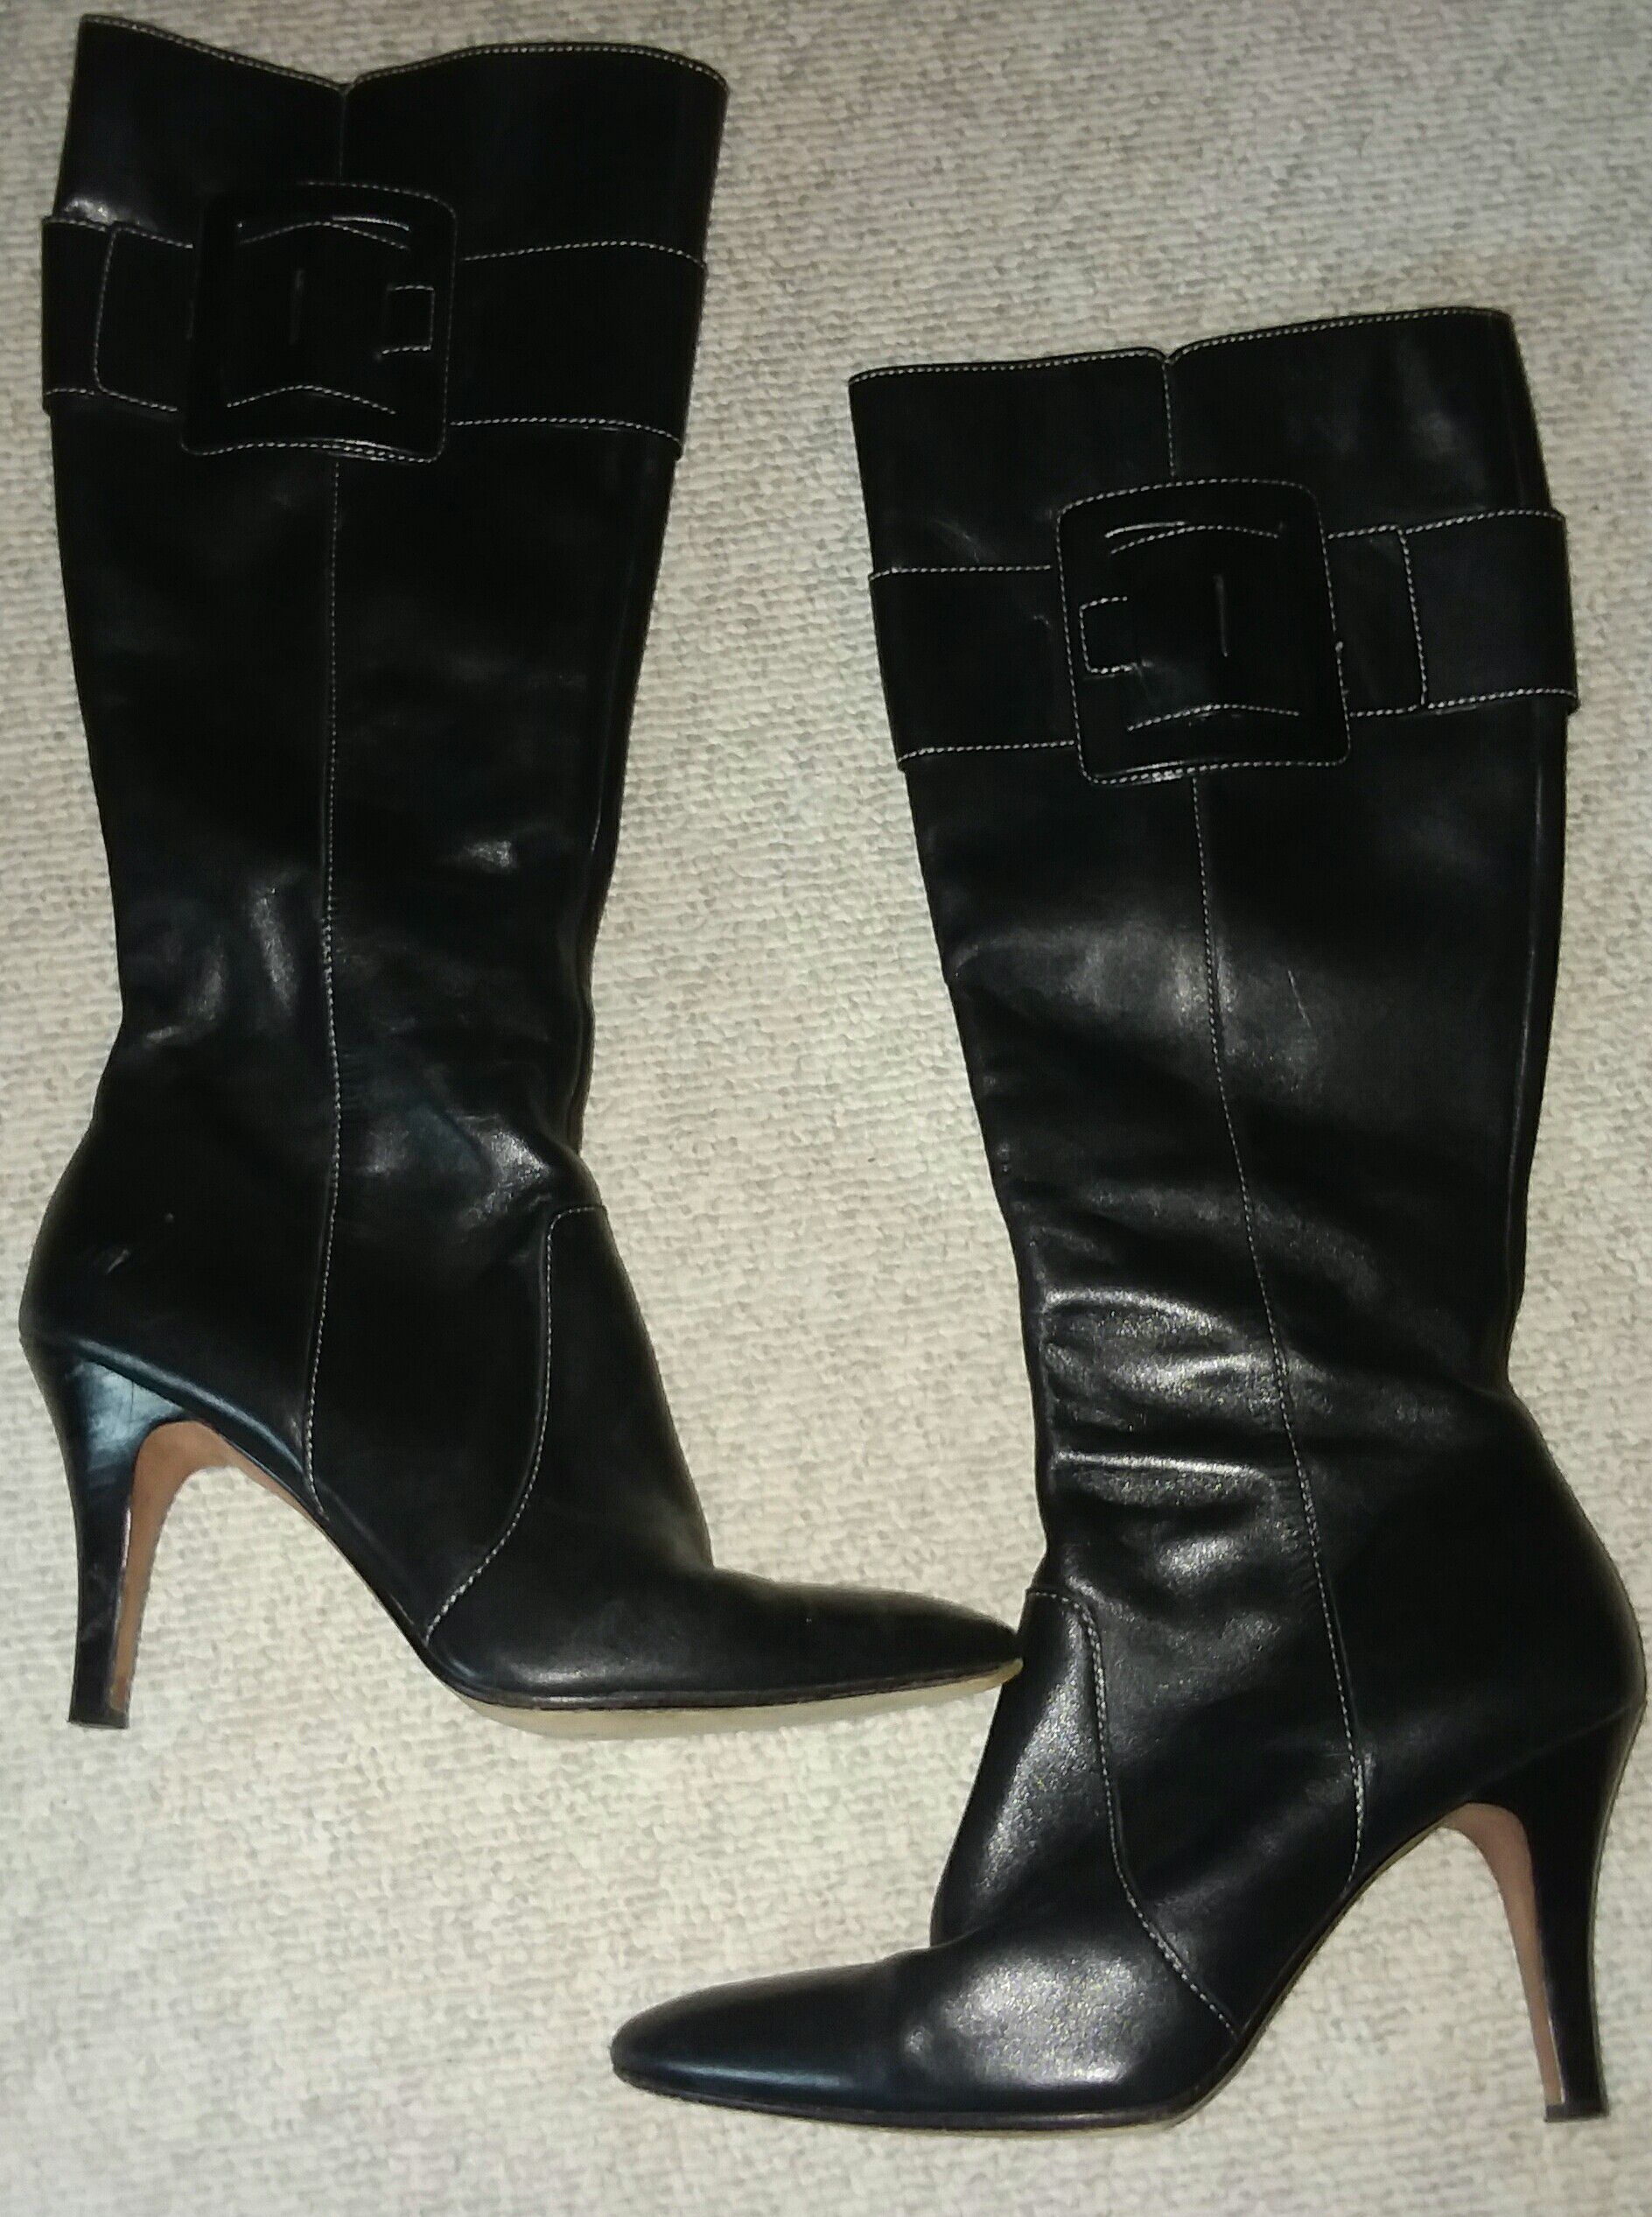 Tall black boots